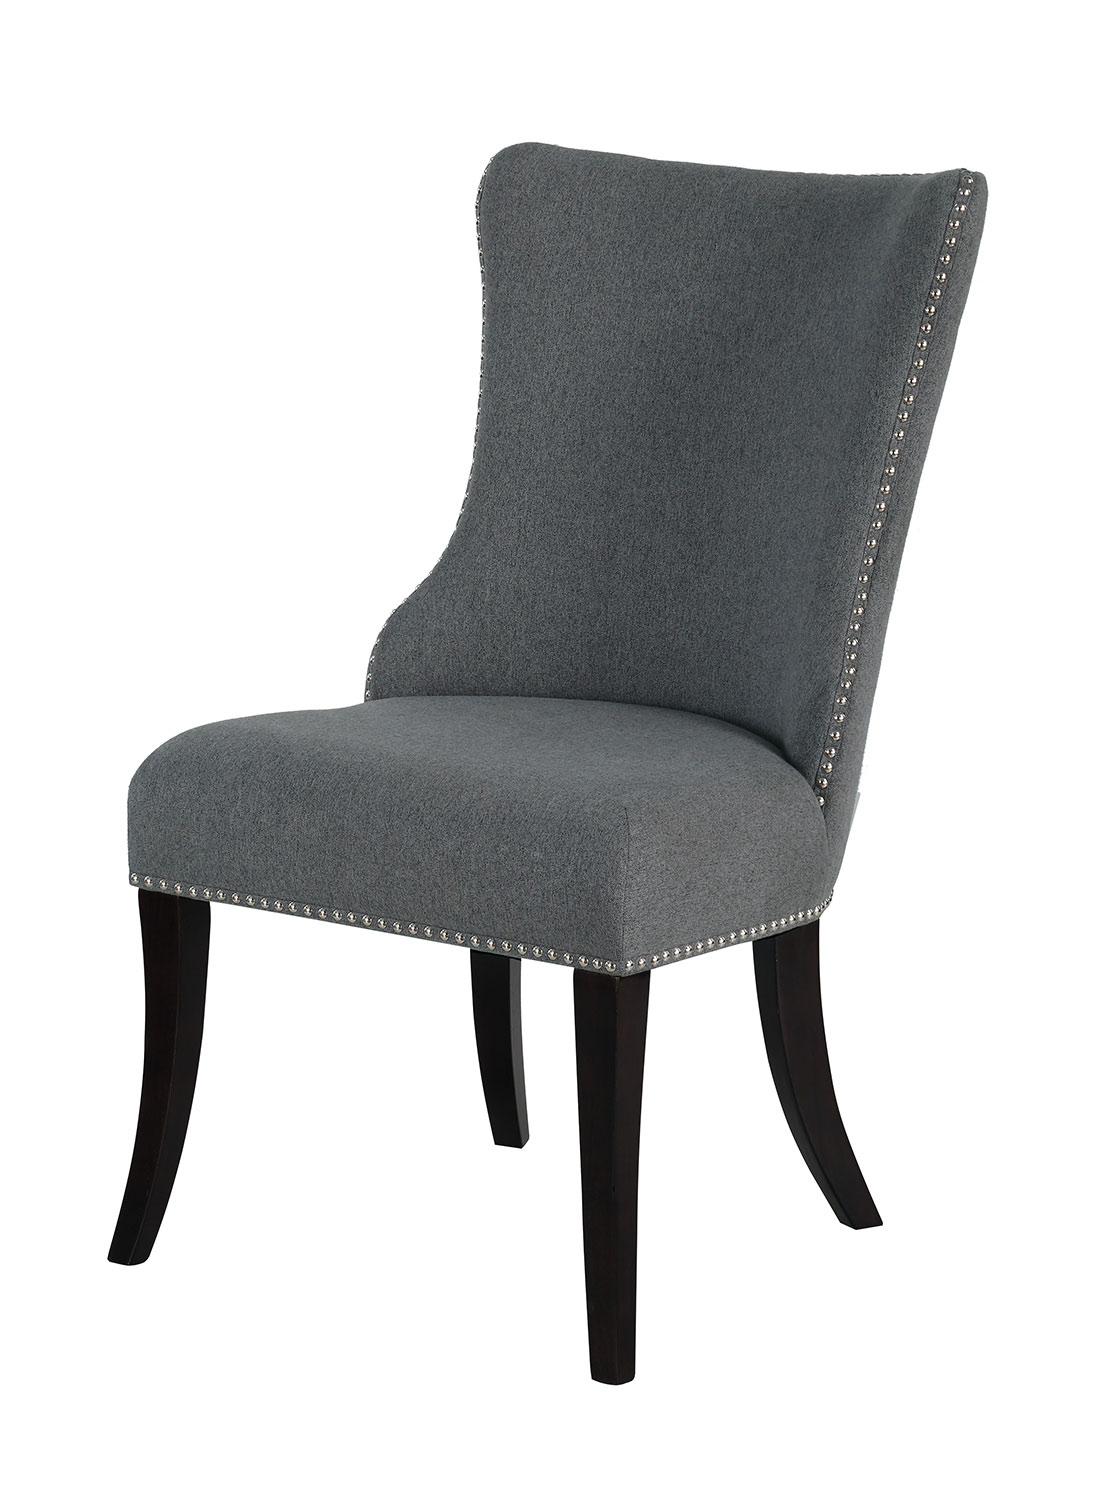 Homelegance Salema Side Chair - Gray - Dark Brown